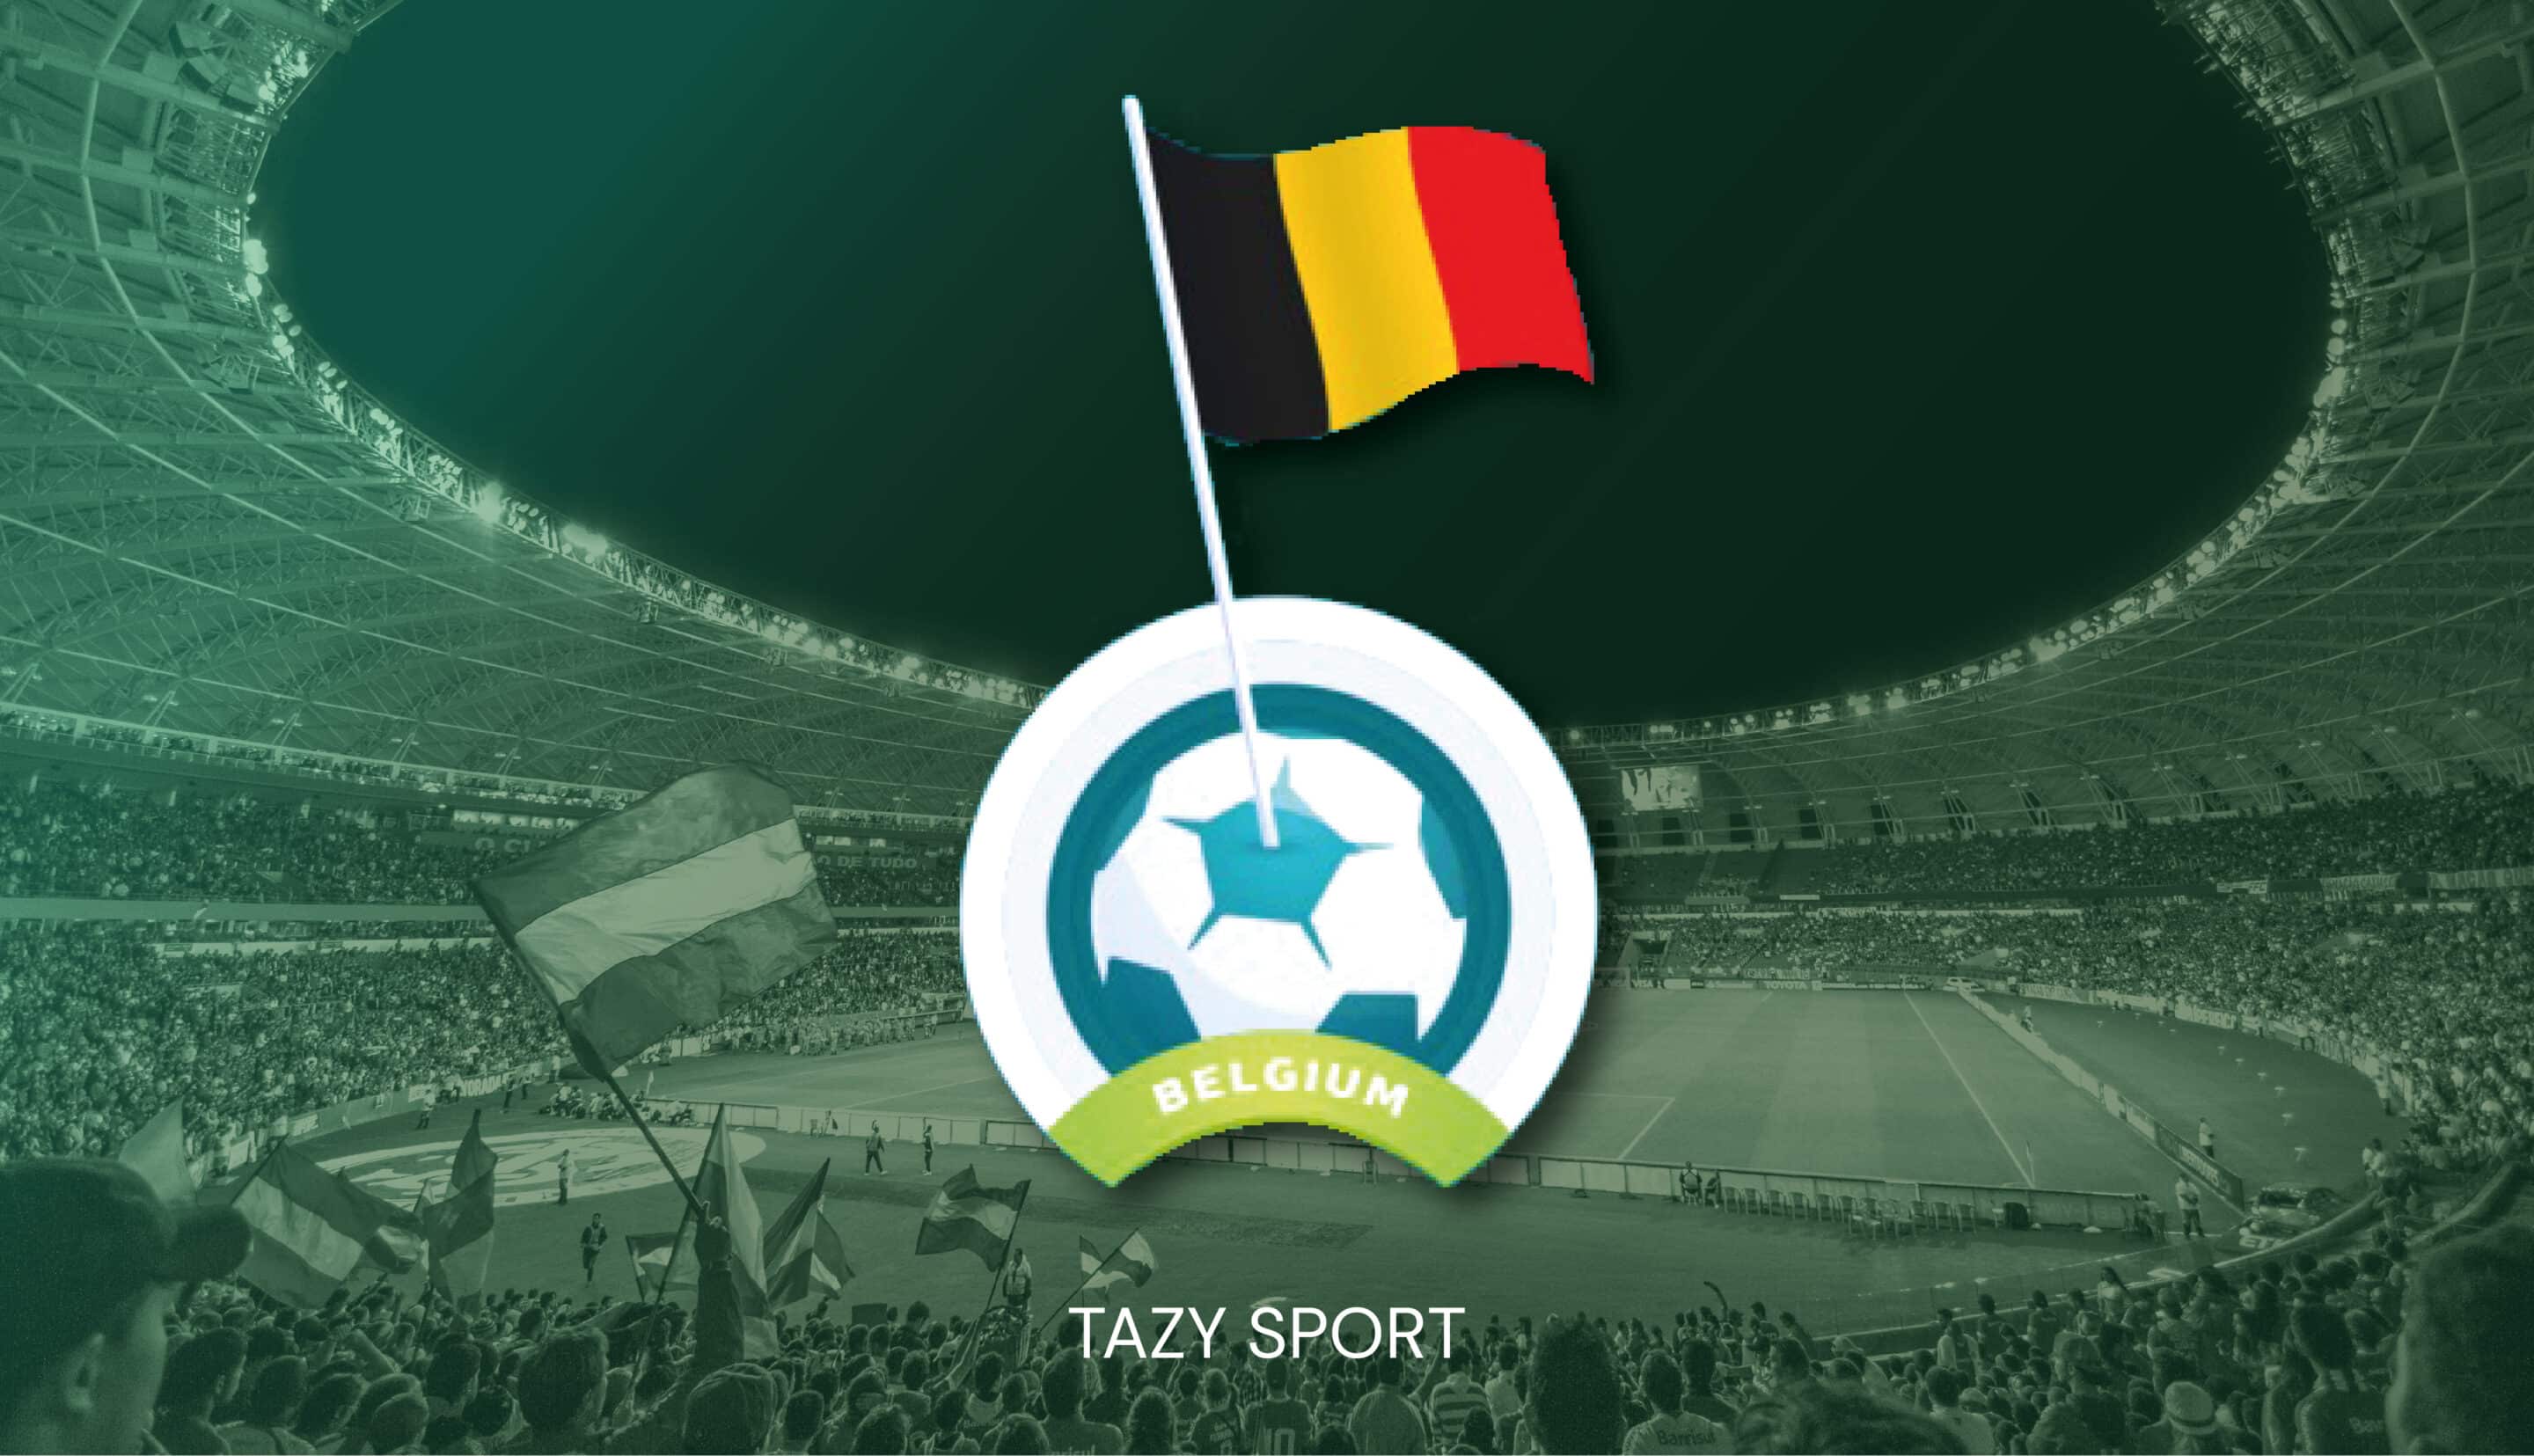 Pronostic football en cours Belgique - Tazy Sport